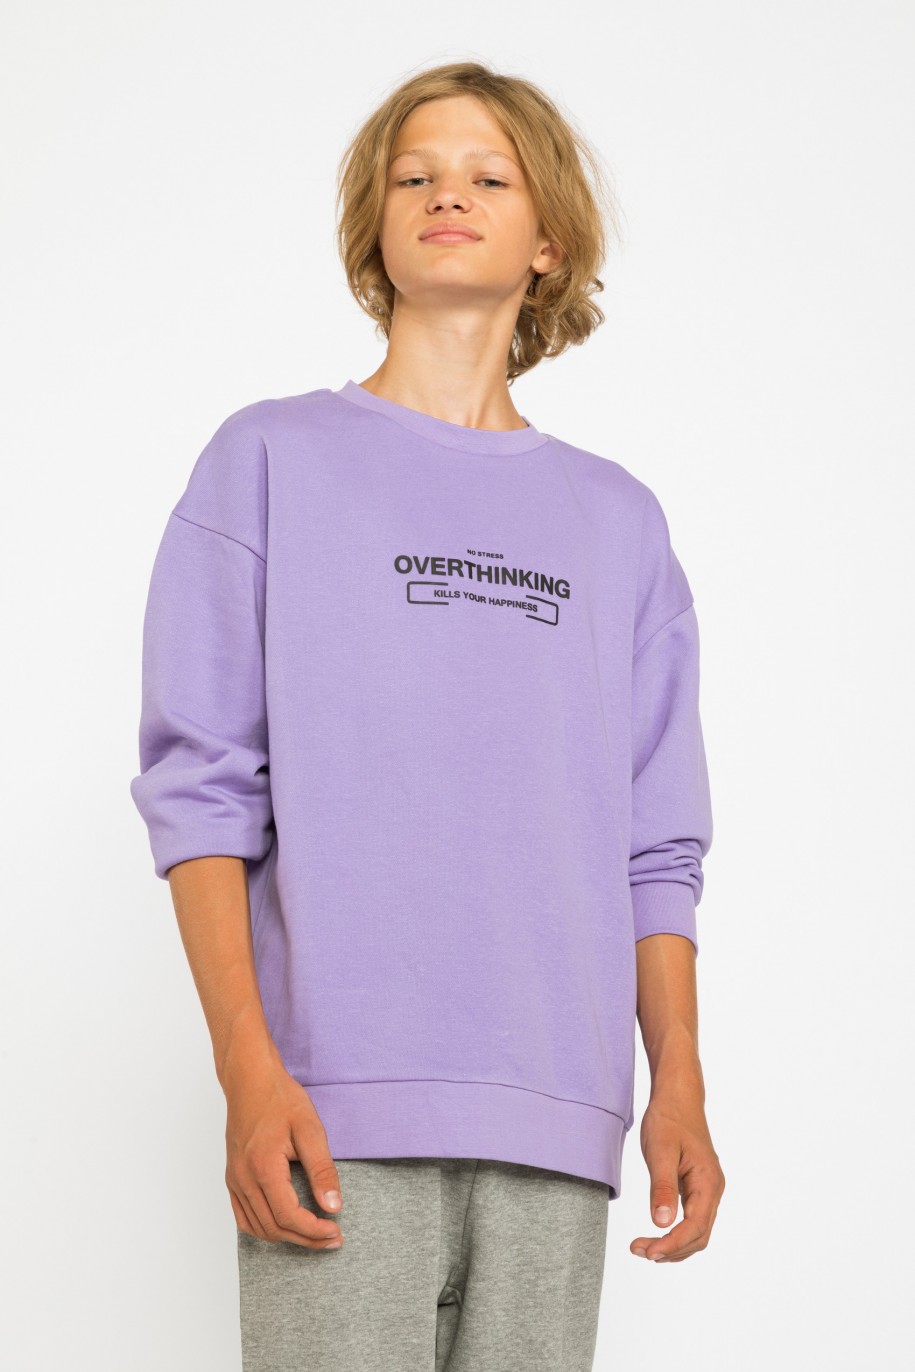 Fioletowa bluza dla chłopaka OVERTHINKING - 30681